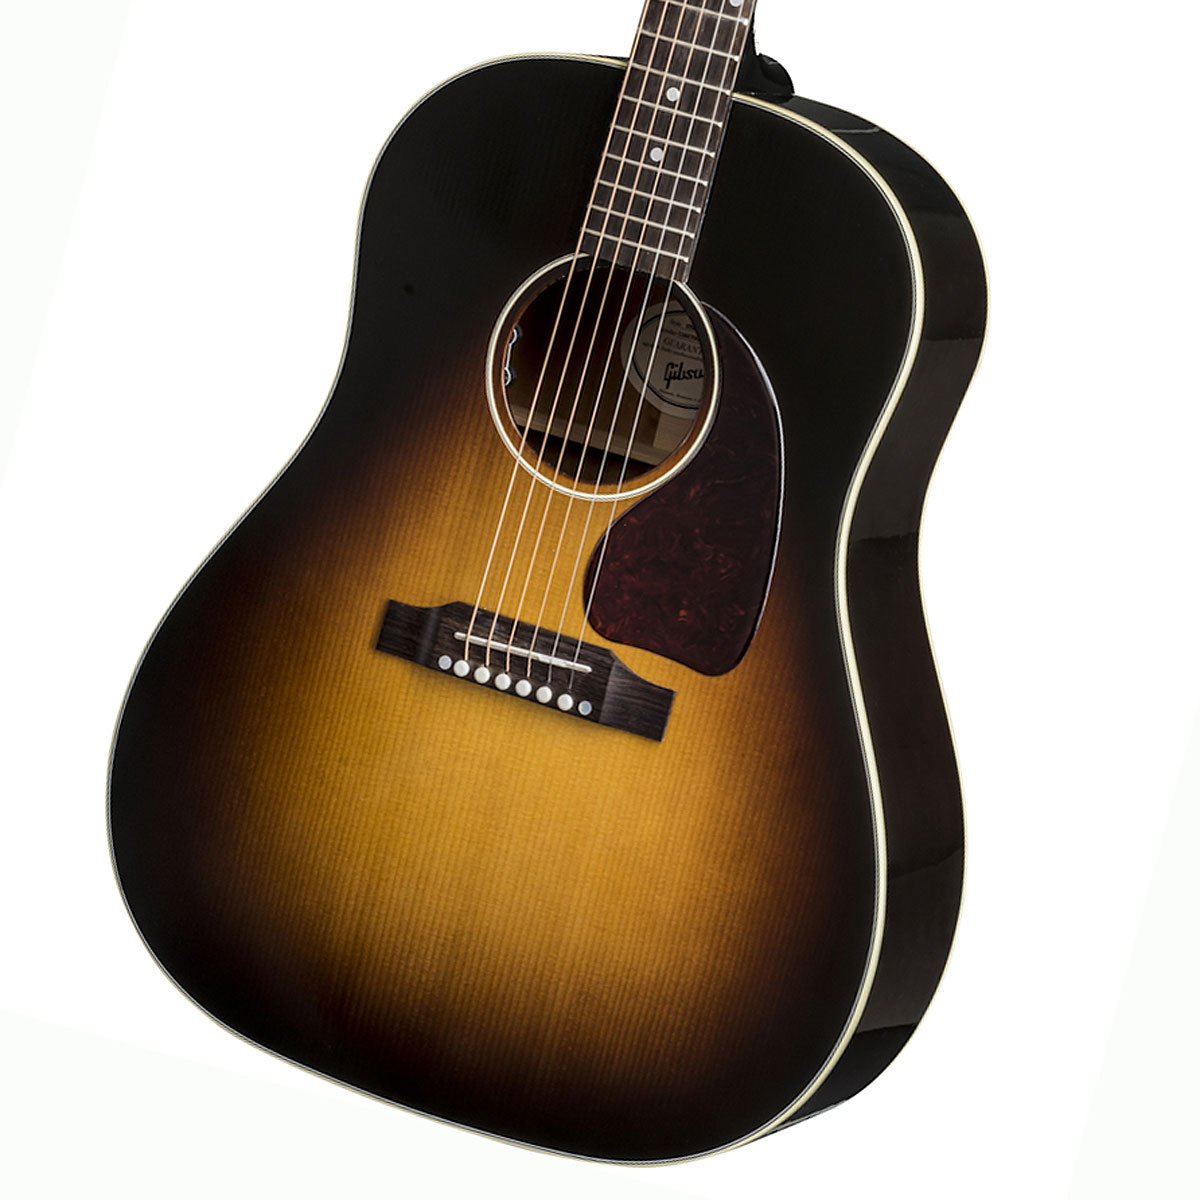 Gibson / J-45 Standard VS (Vintage Sunburst) ギブソン アコースティックギター フォークギター アコギ J45【御茶ノ水HARVEST_GUITARS】【YRK】